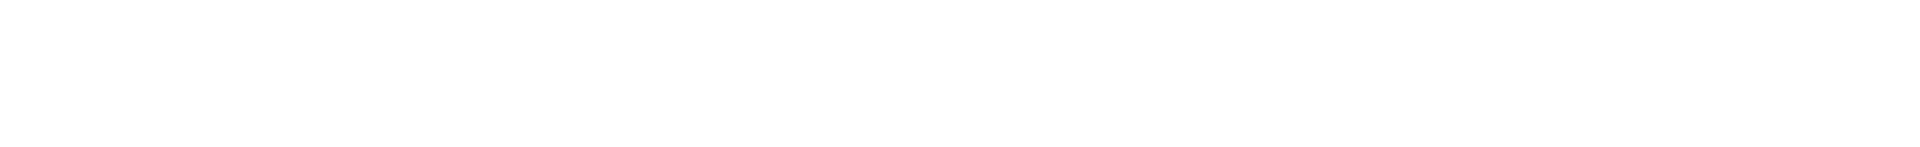 header-logo-total